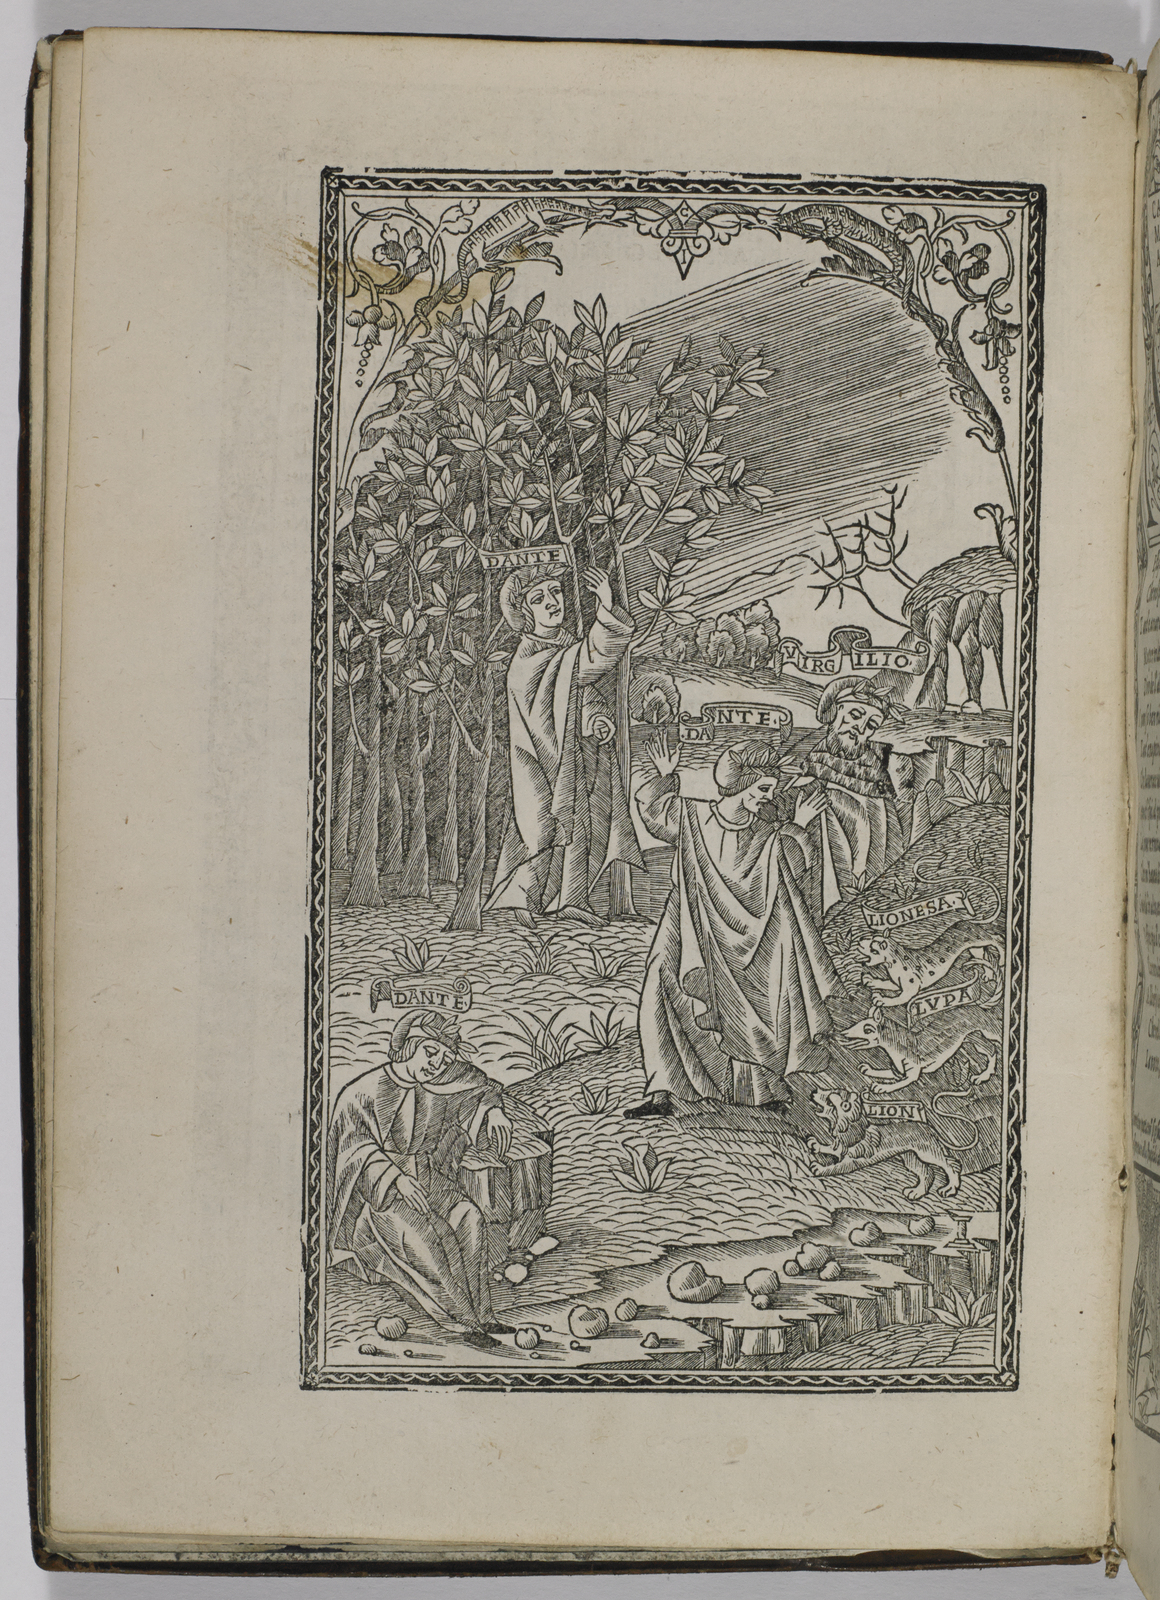 Woodcut from Dante Alighieri's Opera del divino poeta Dante